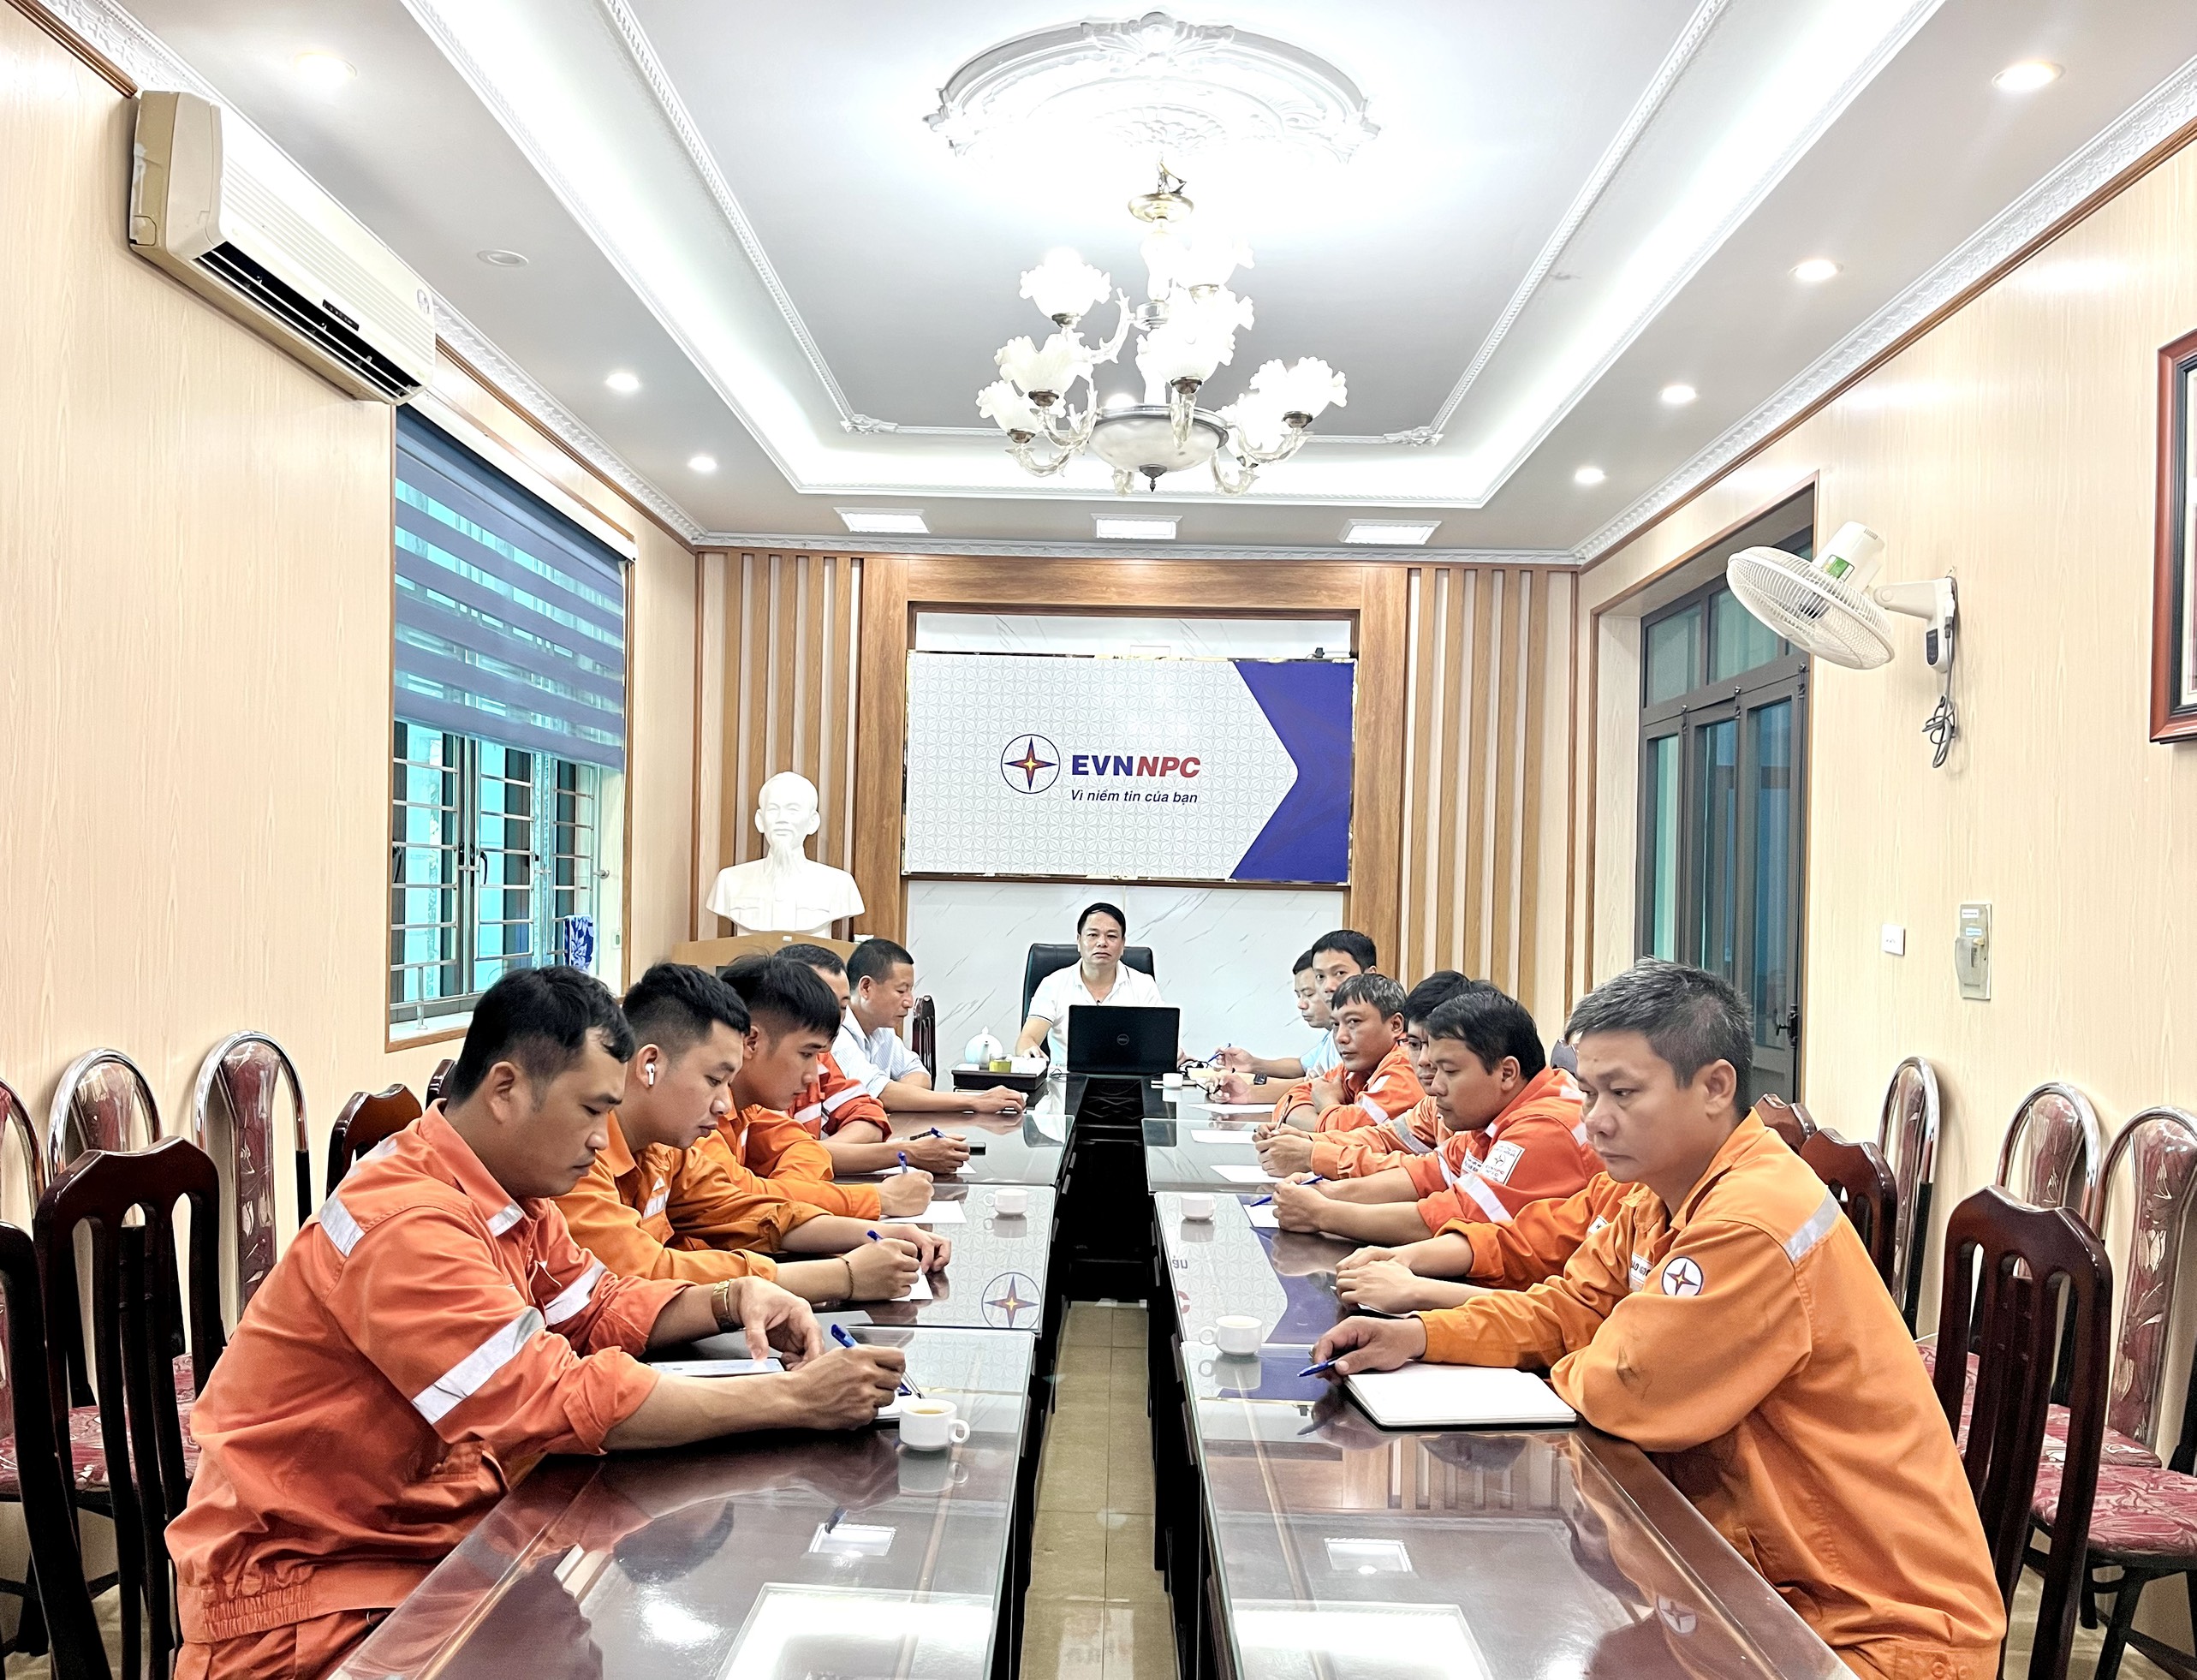 Xí nghiệp Dịch vụ Điện lực Nam Định thực hiện đào tạo nâng cao chất lượng nguồn nhân lực trong lĩnh vực Tư vấn giám sát.